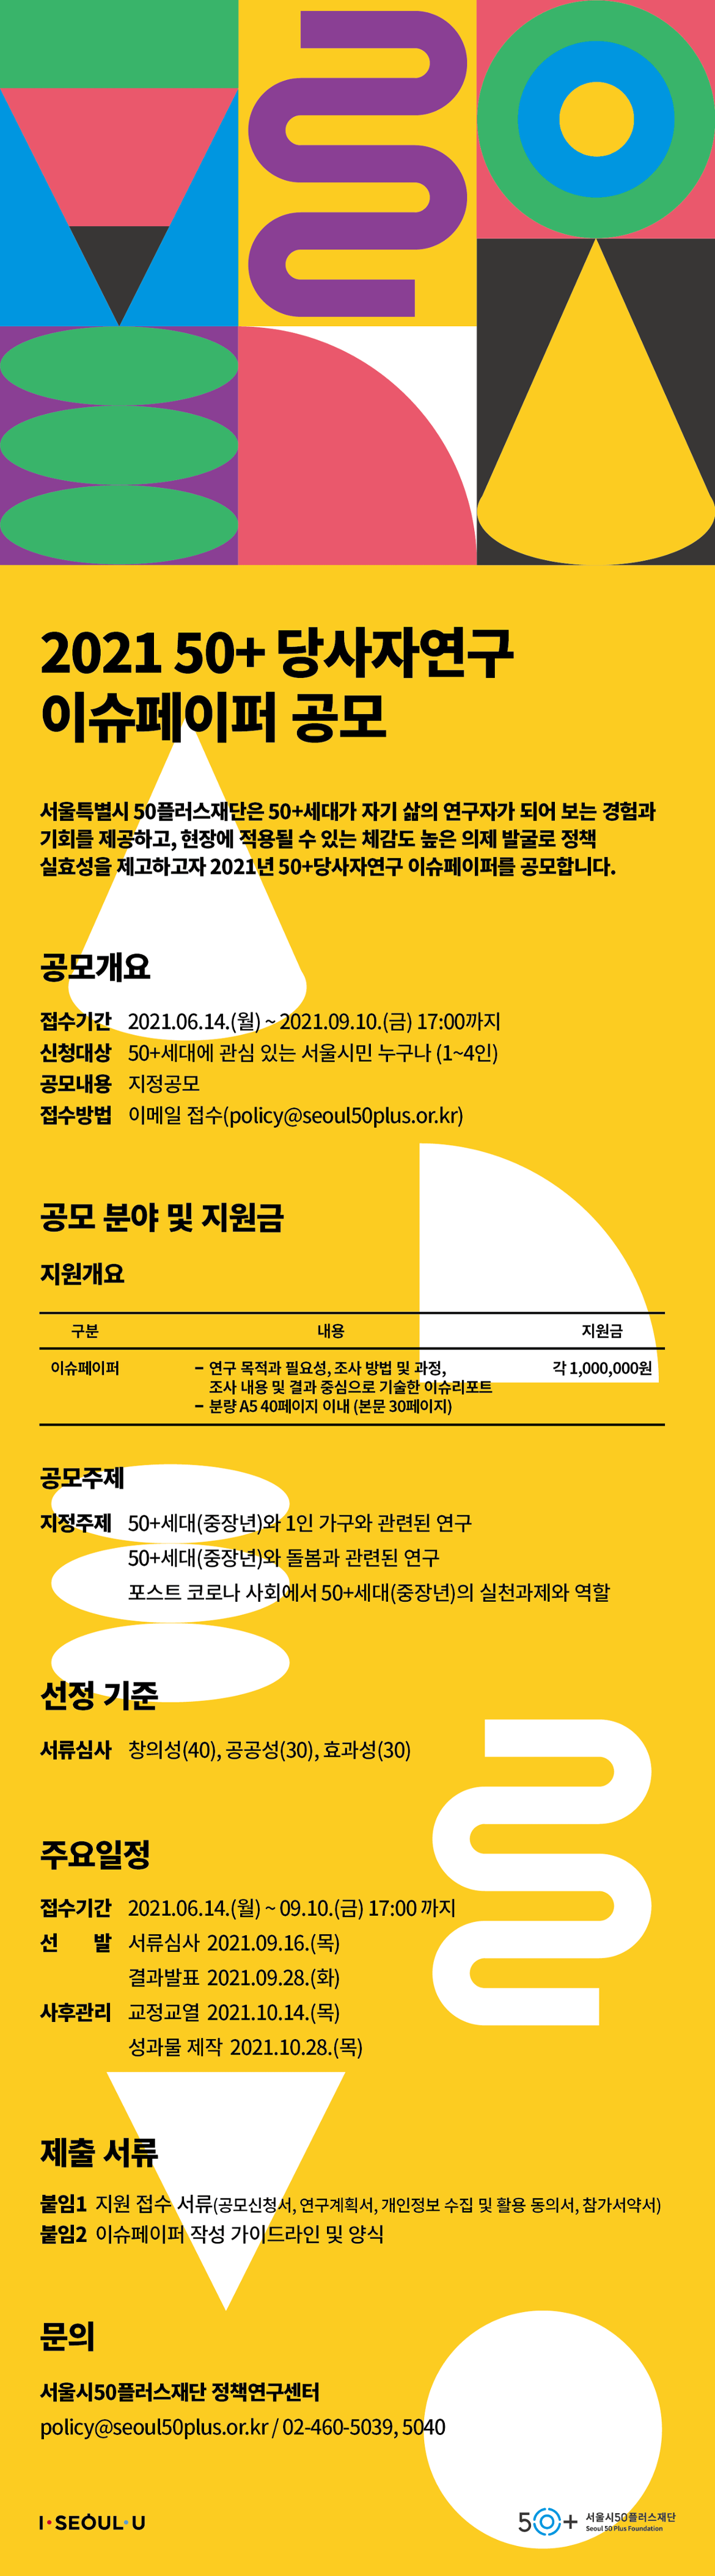 서울시50플러스재단_당사자연구_웹자보(2차).png